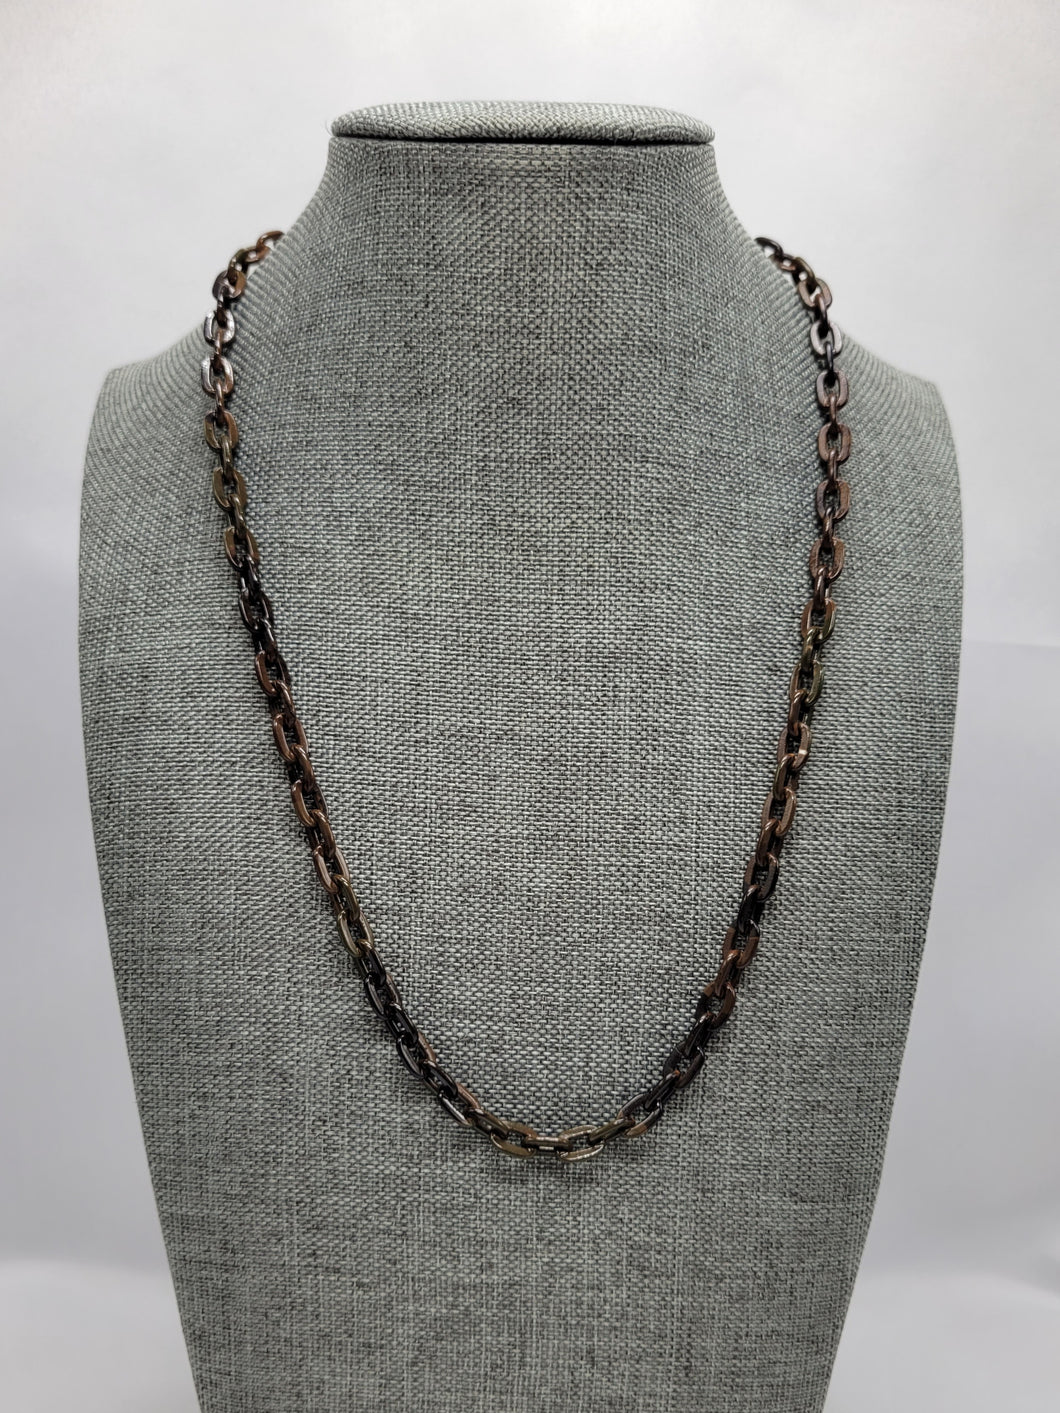 Camo Chain Necklace